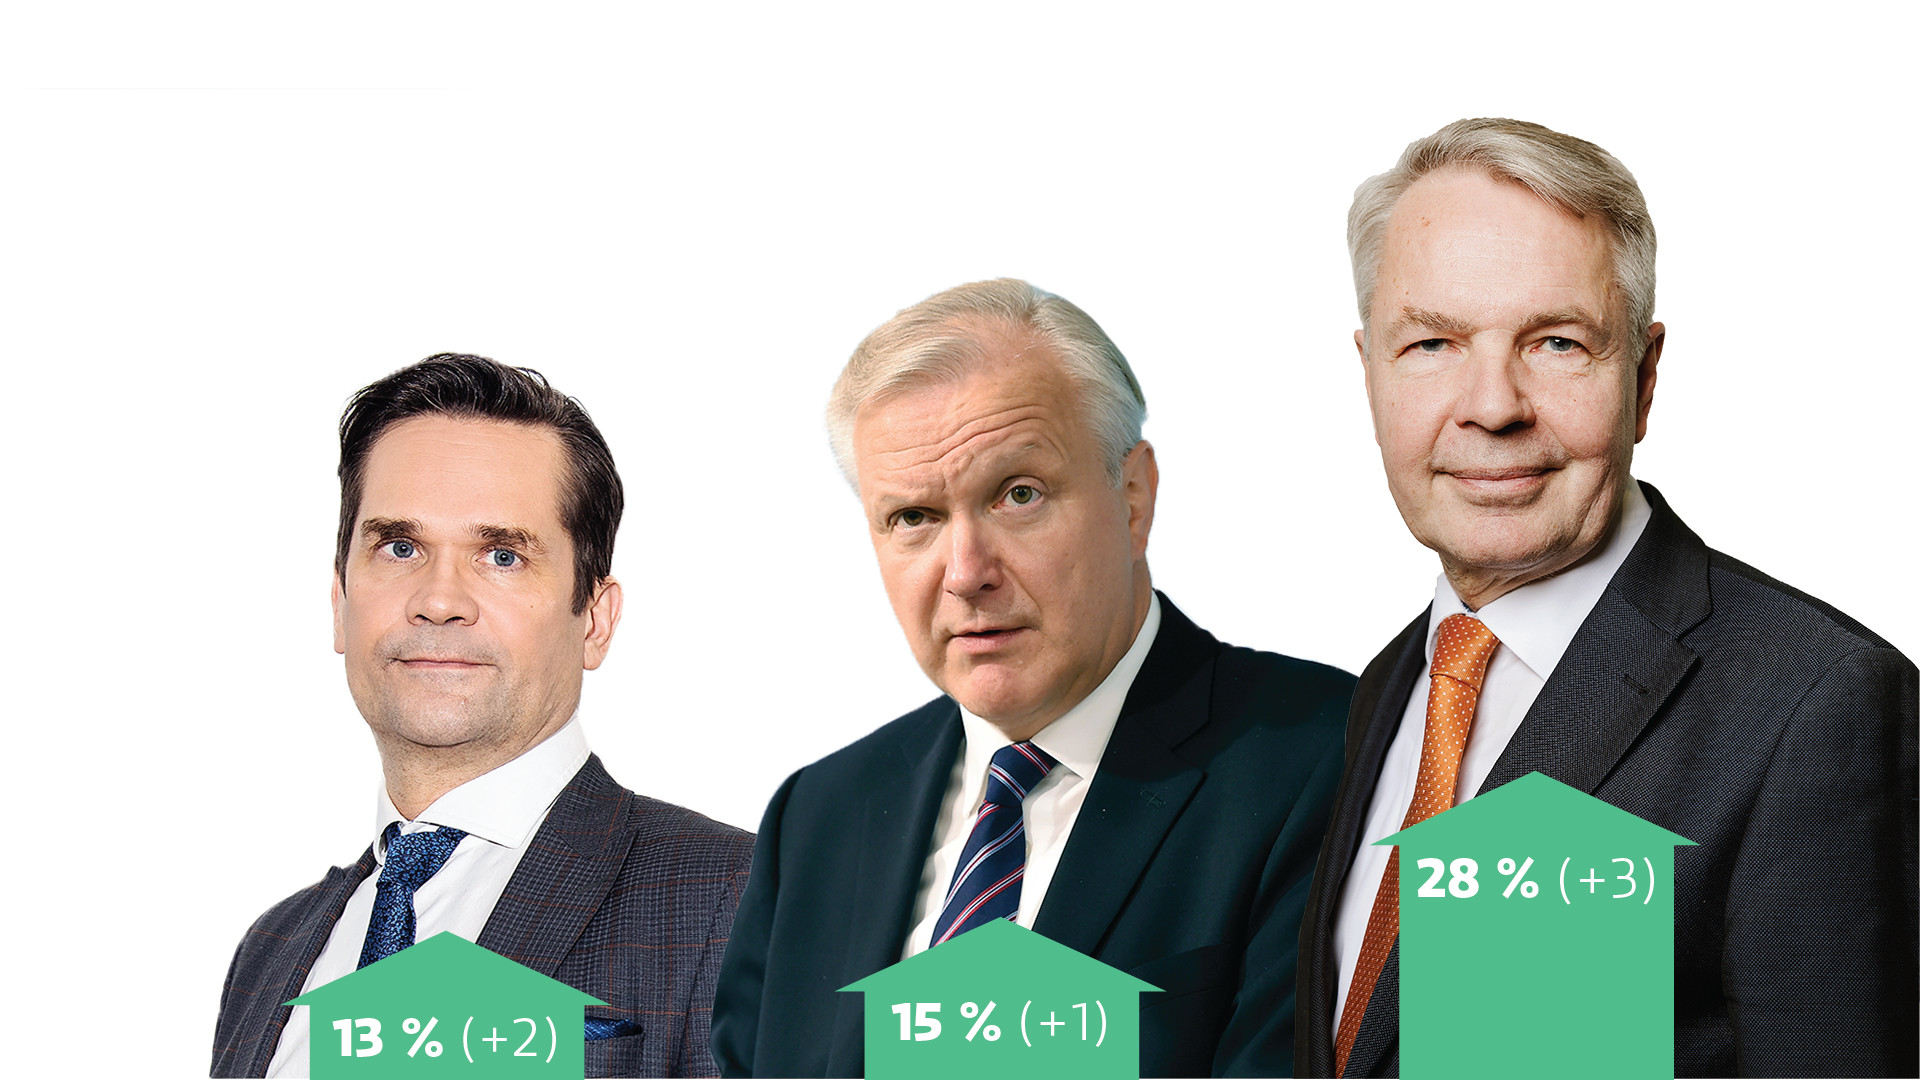 Pekka Haavisto mendahului pilihan raya presiden Yle yang terbaharu